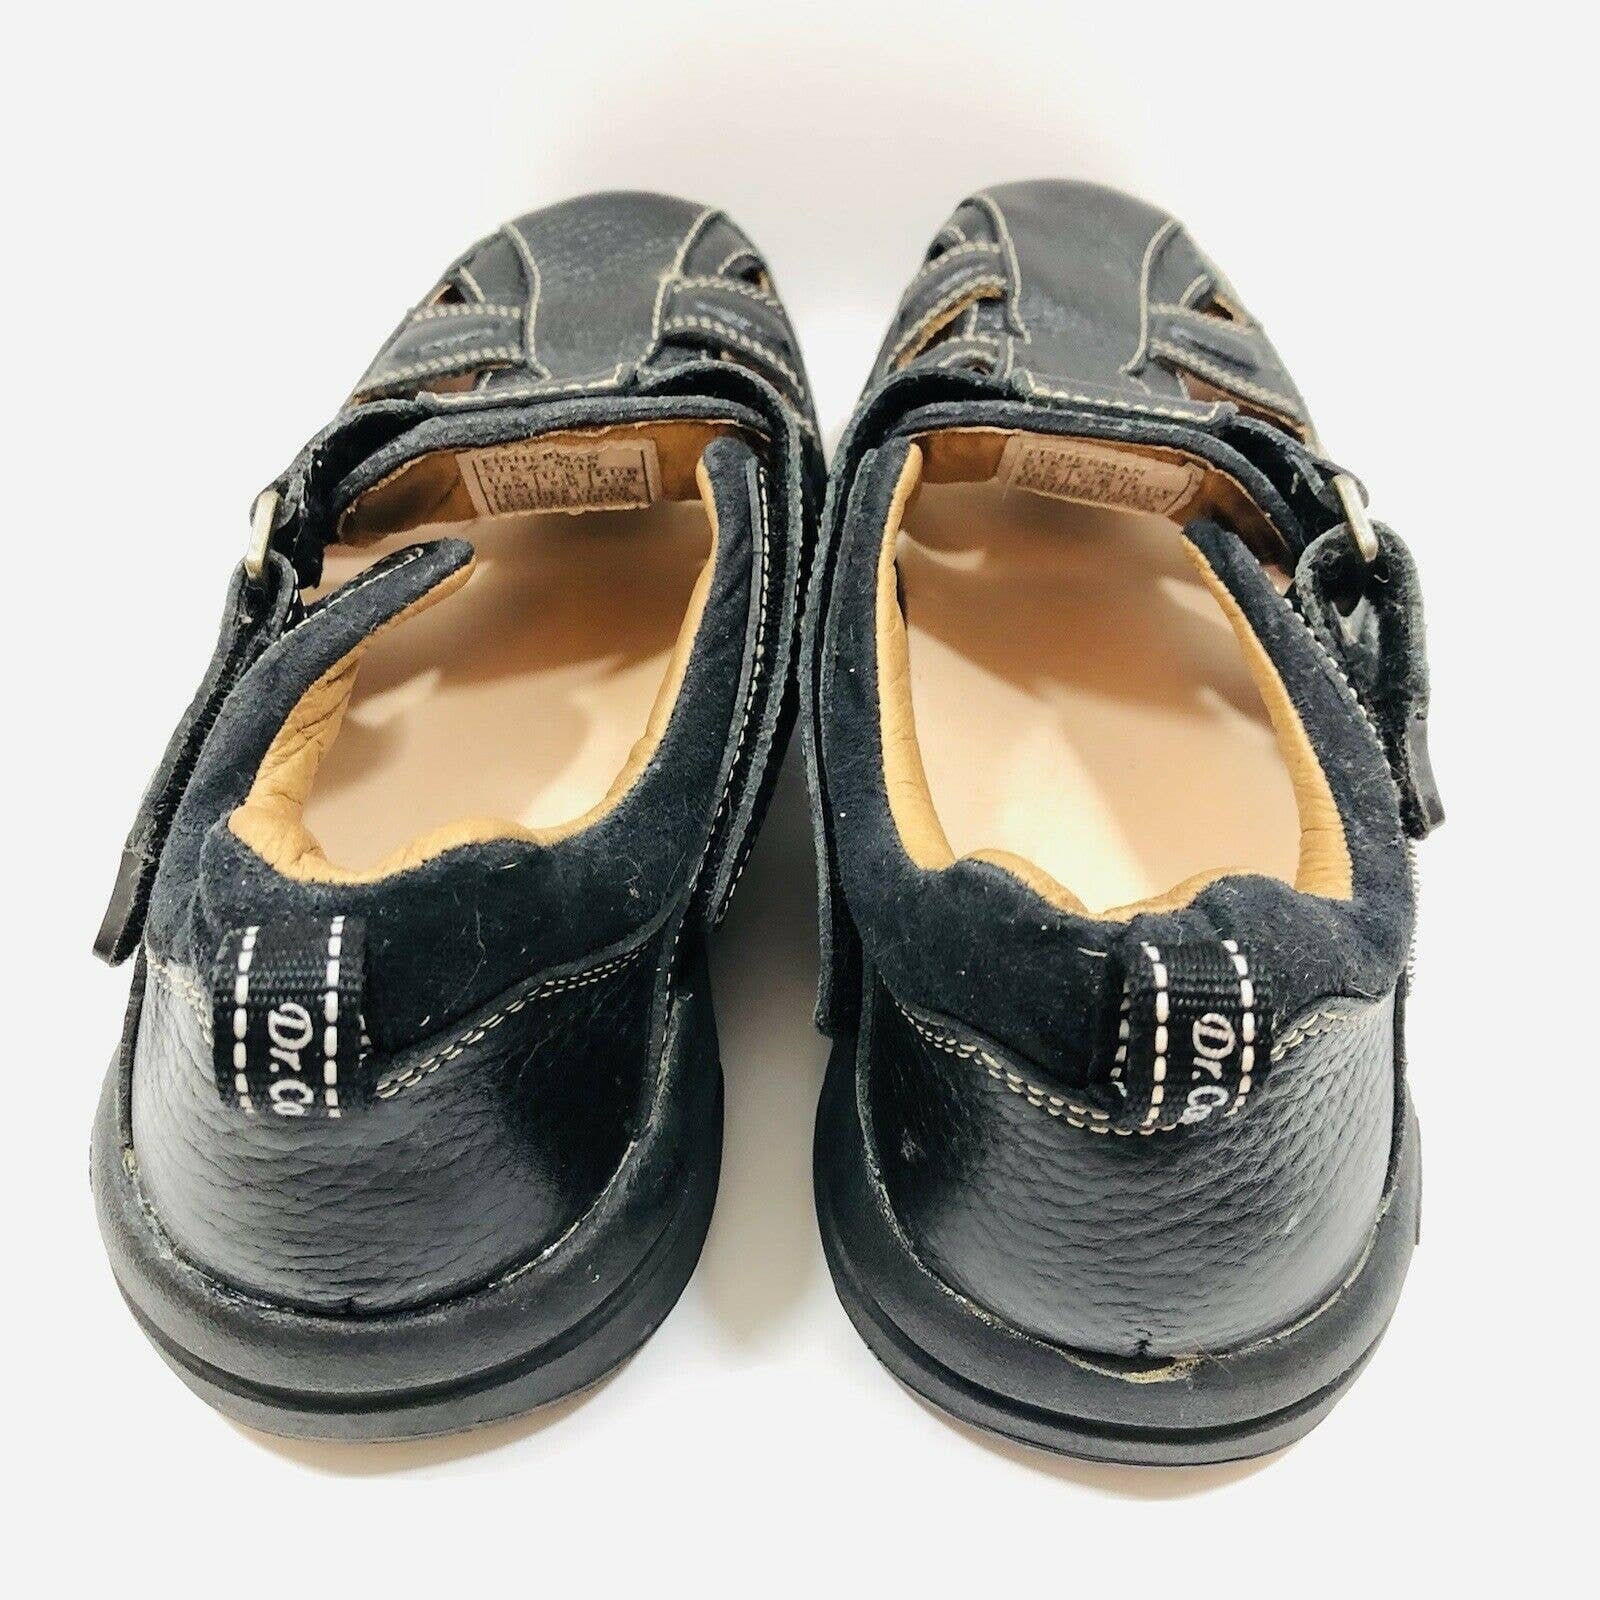 Dr. Comfort Men's Fisherman Sandal 9810 Black Leather Size | Etsy